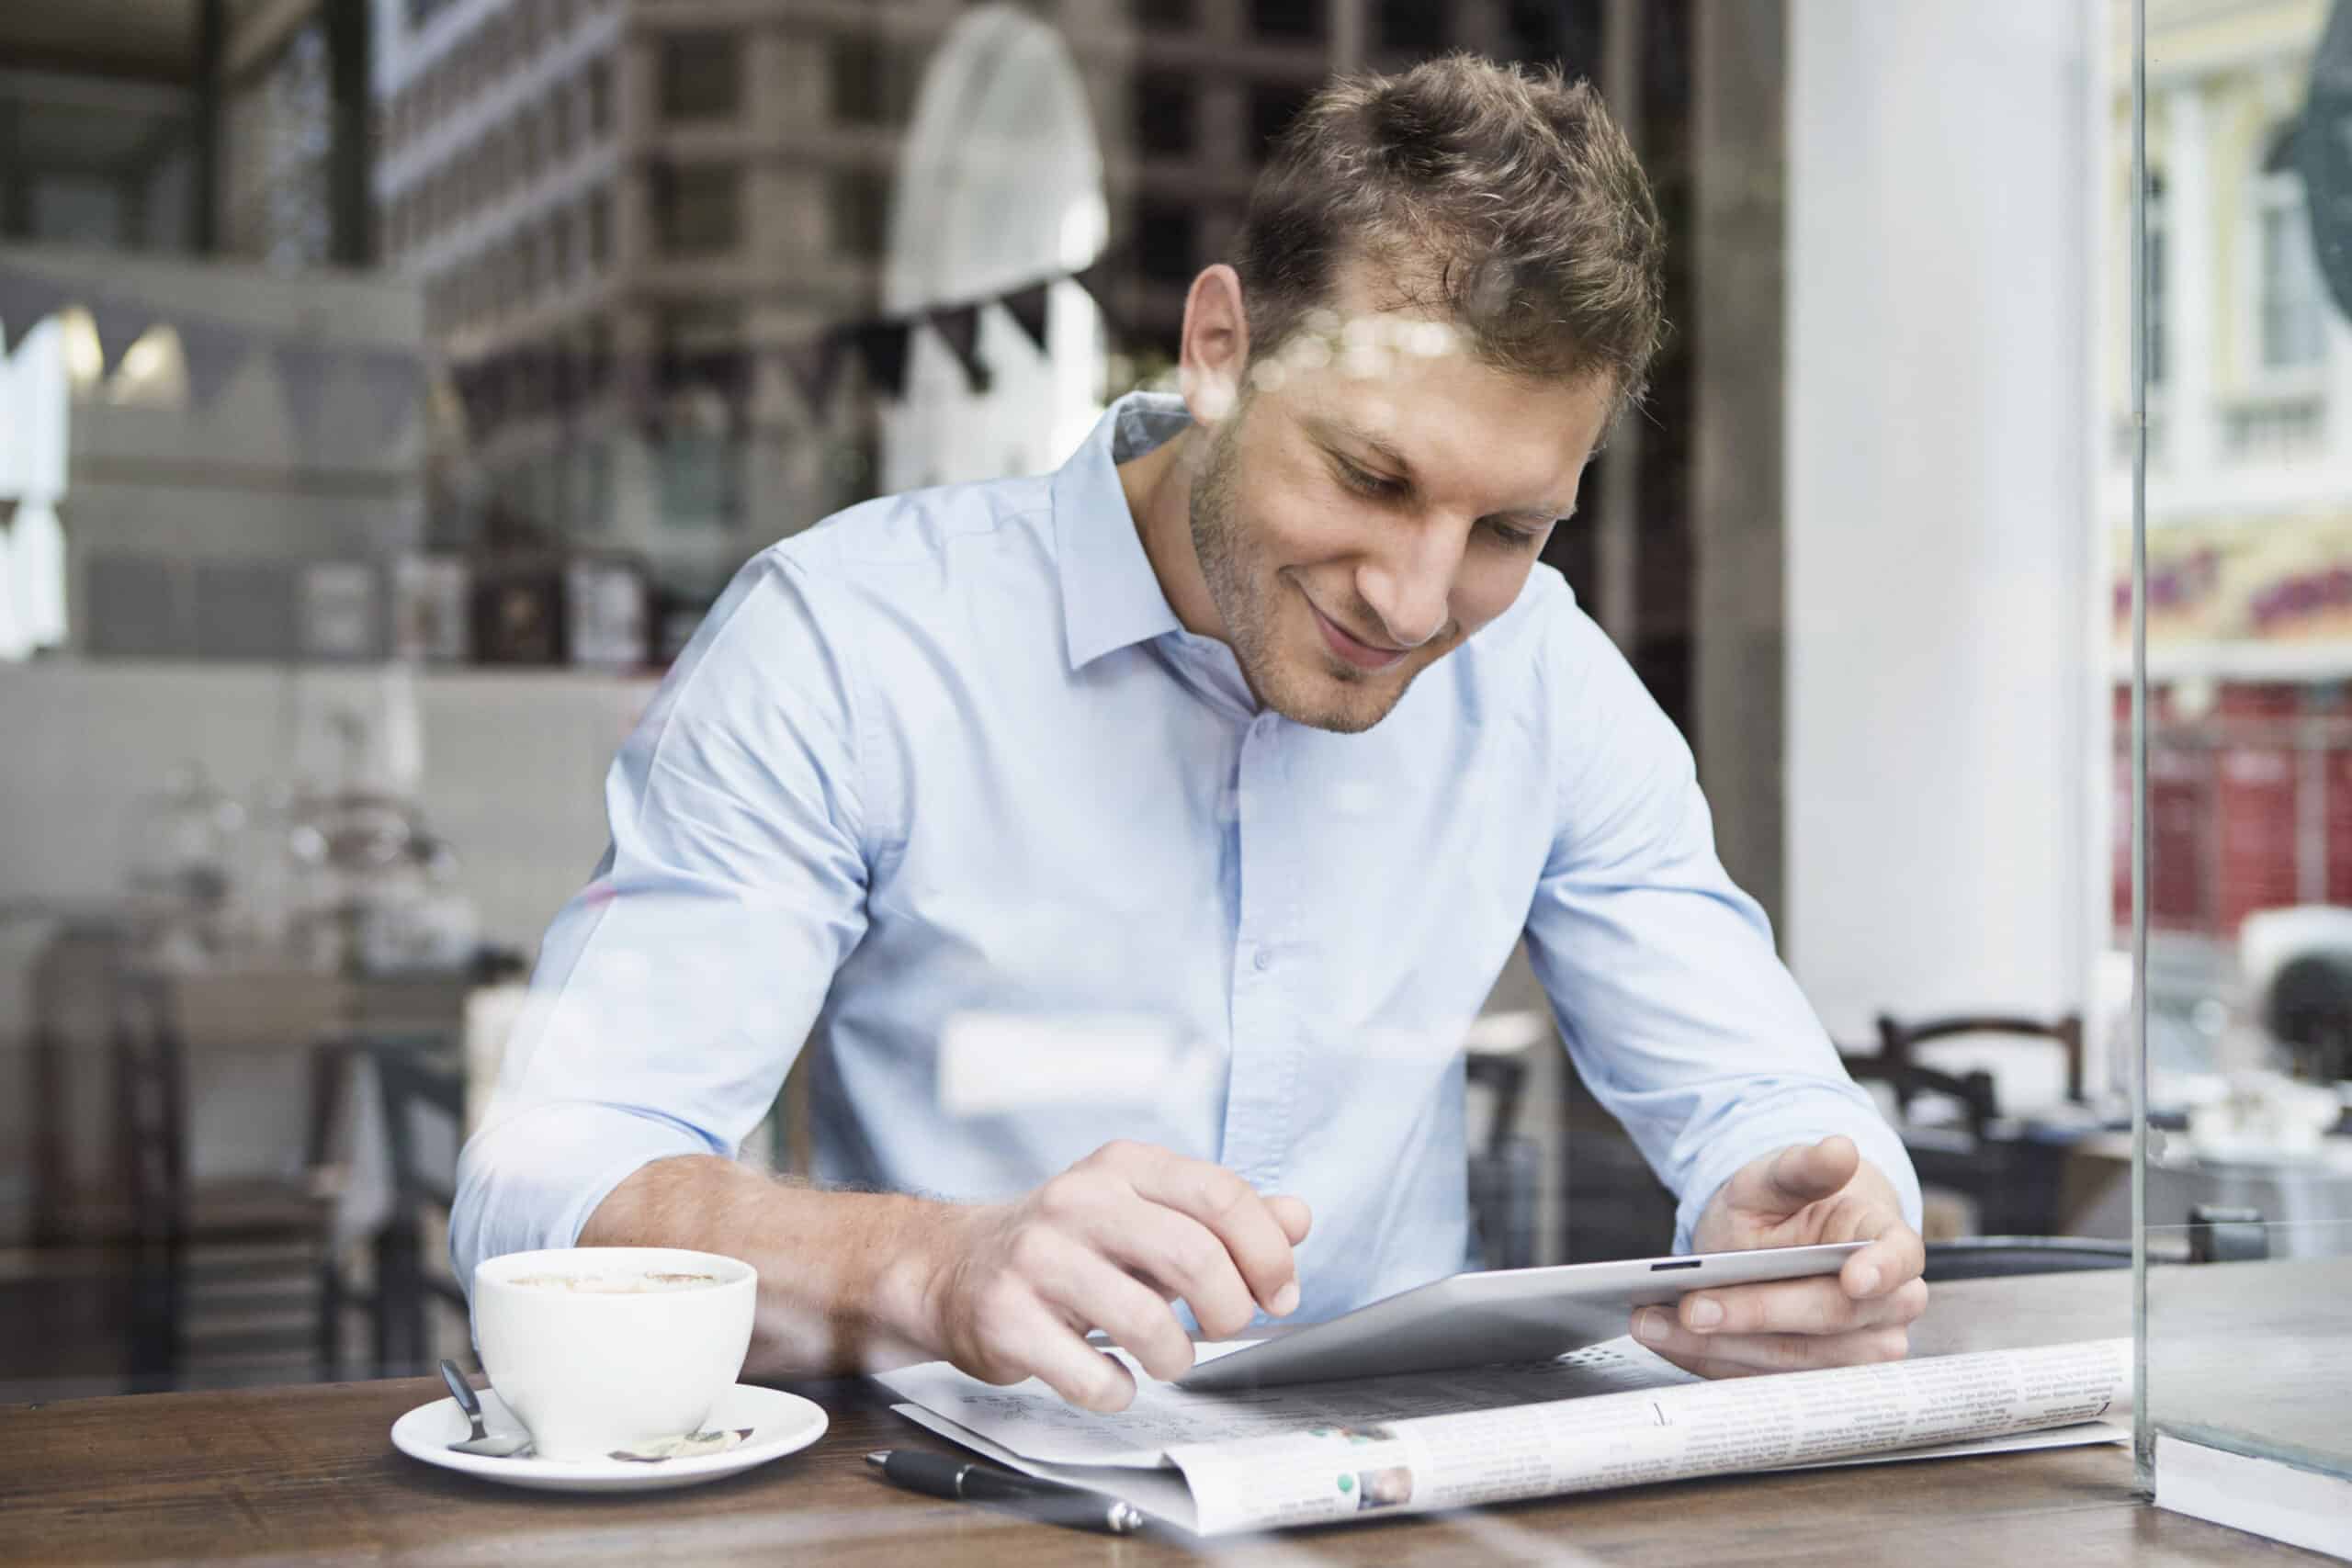 Ein Mann in einem hellblauen Hemd sitzt an einem Cafétisch und schaut auf ein Tablet. Neben ihm liegen eine Zeitung und eine Tasse Kaffee. In der hellen, modernen Umgebung wirkt er konzentriert und zufrieden. © Fotografie Tomas Rodriguez